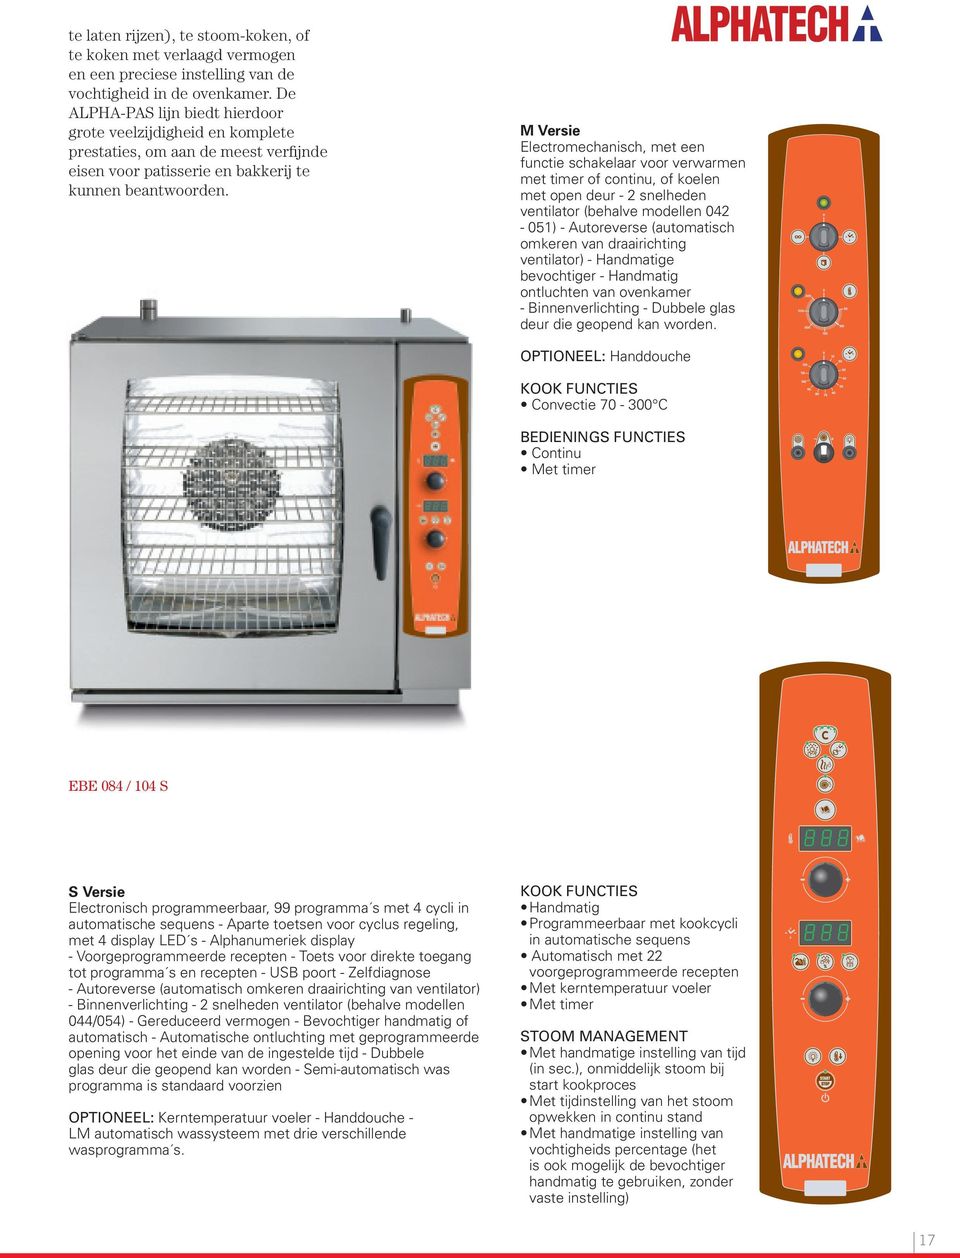 M Versie Electromechanisch, met een functie schakelaar voor verwarmen met timer of continu, of koelen met open deur - 2 snelheden ventilator (behalve modellen 042-051) - Autoreverse (automatisch